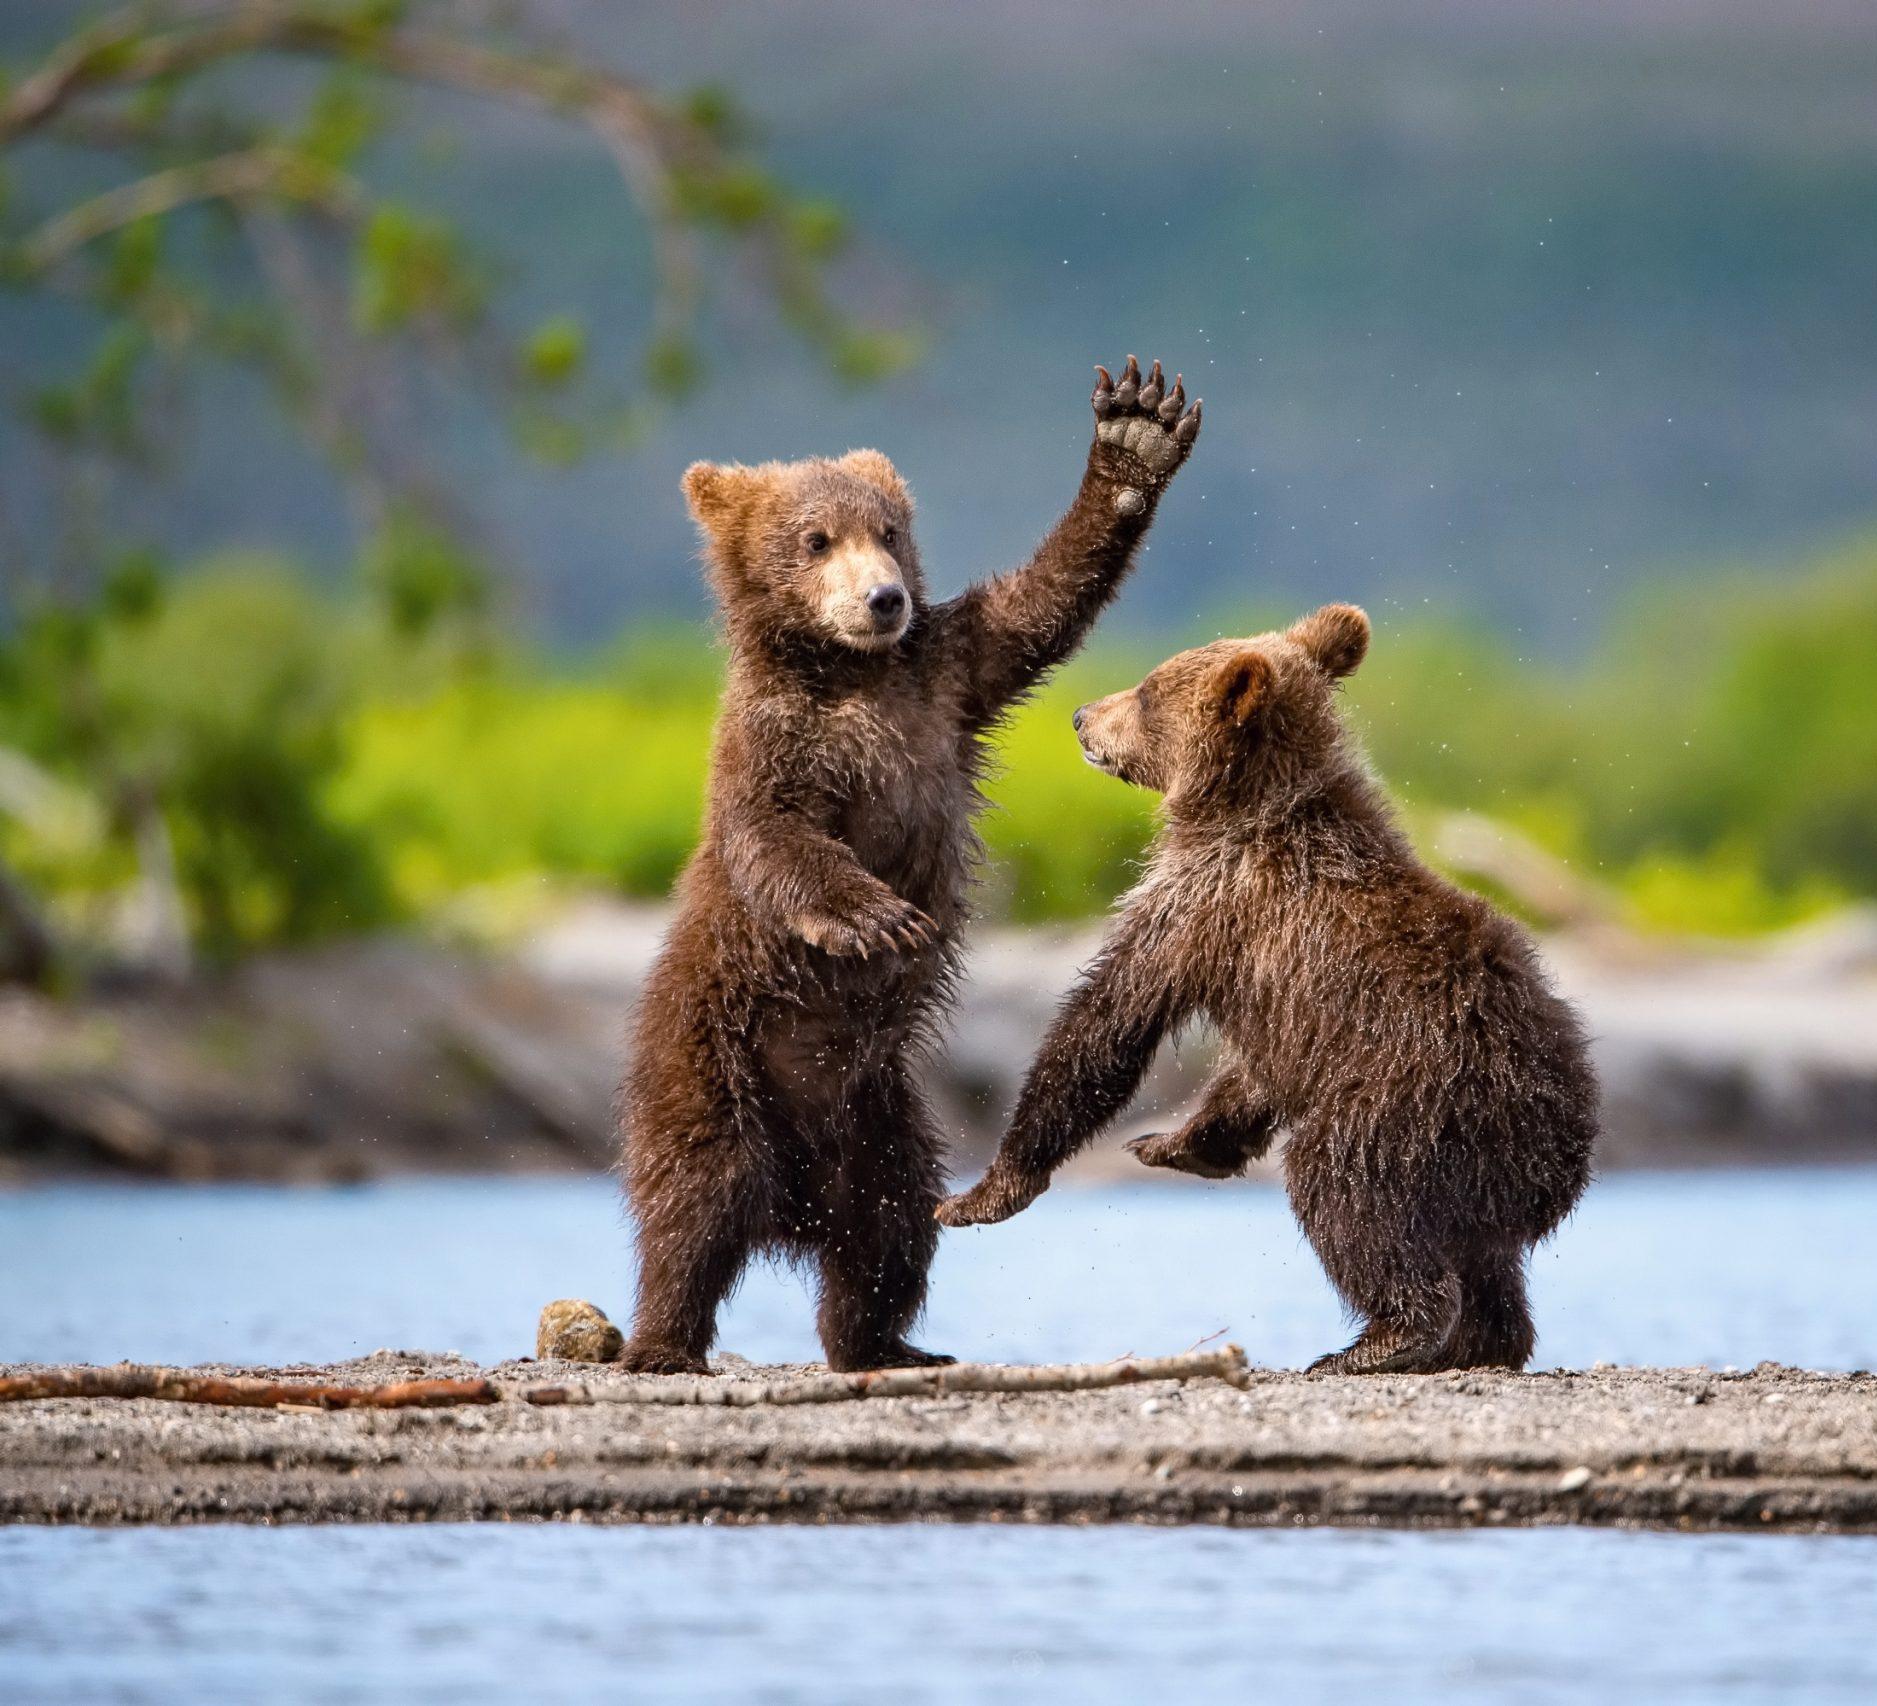 Playful bear cubs